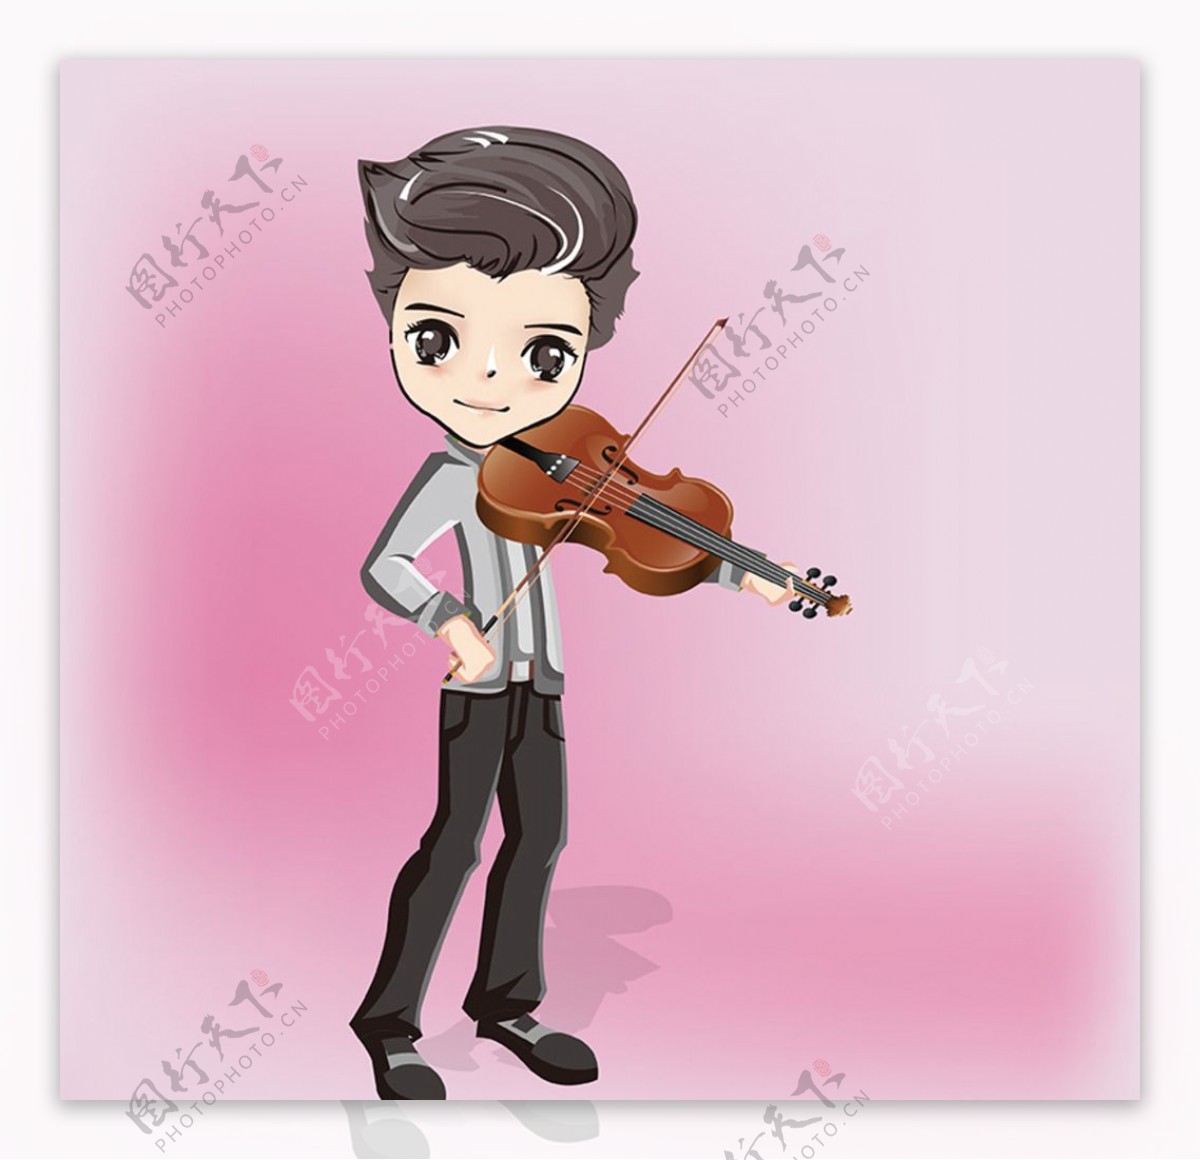 乐器男孩形象小提琴